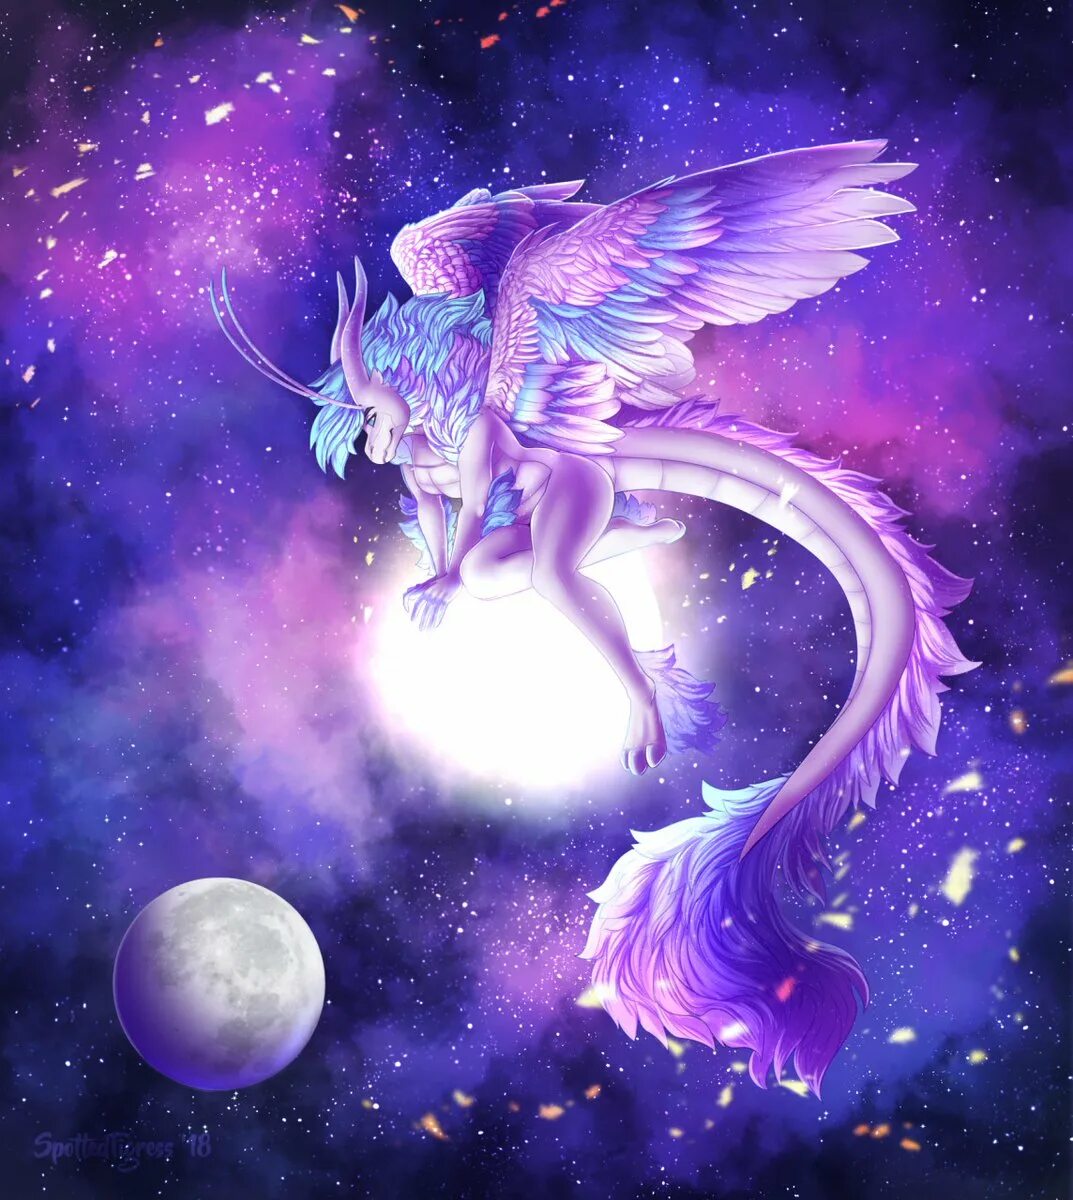 Caring star draco. Лунный дракон. Красивый дракон. Дракон космос. Красивые космические драконы.